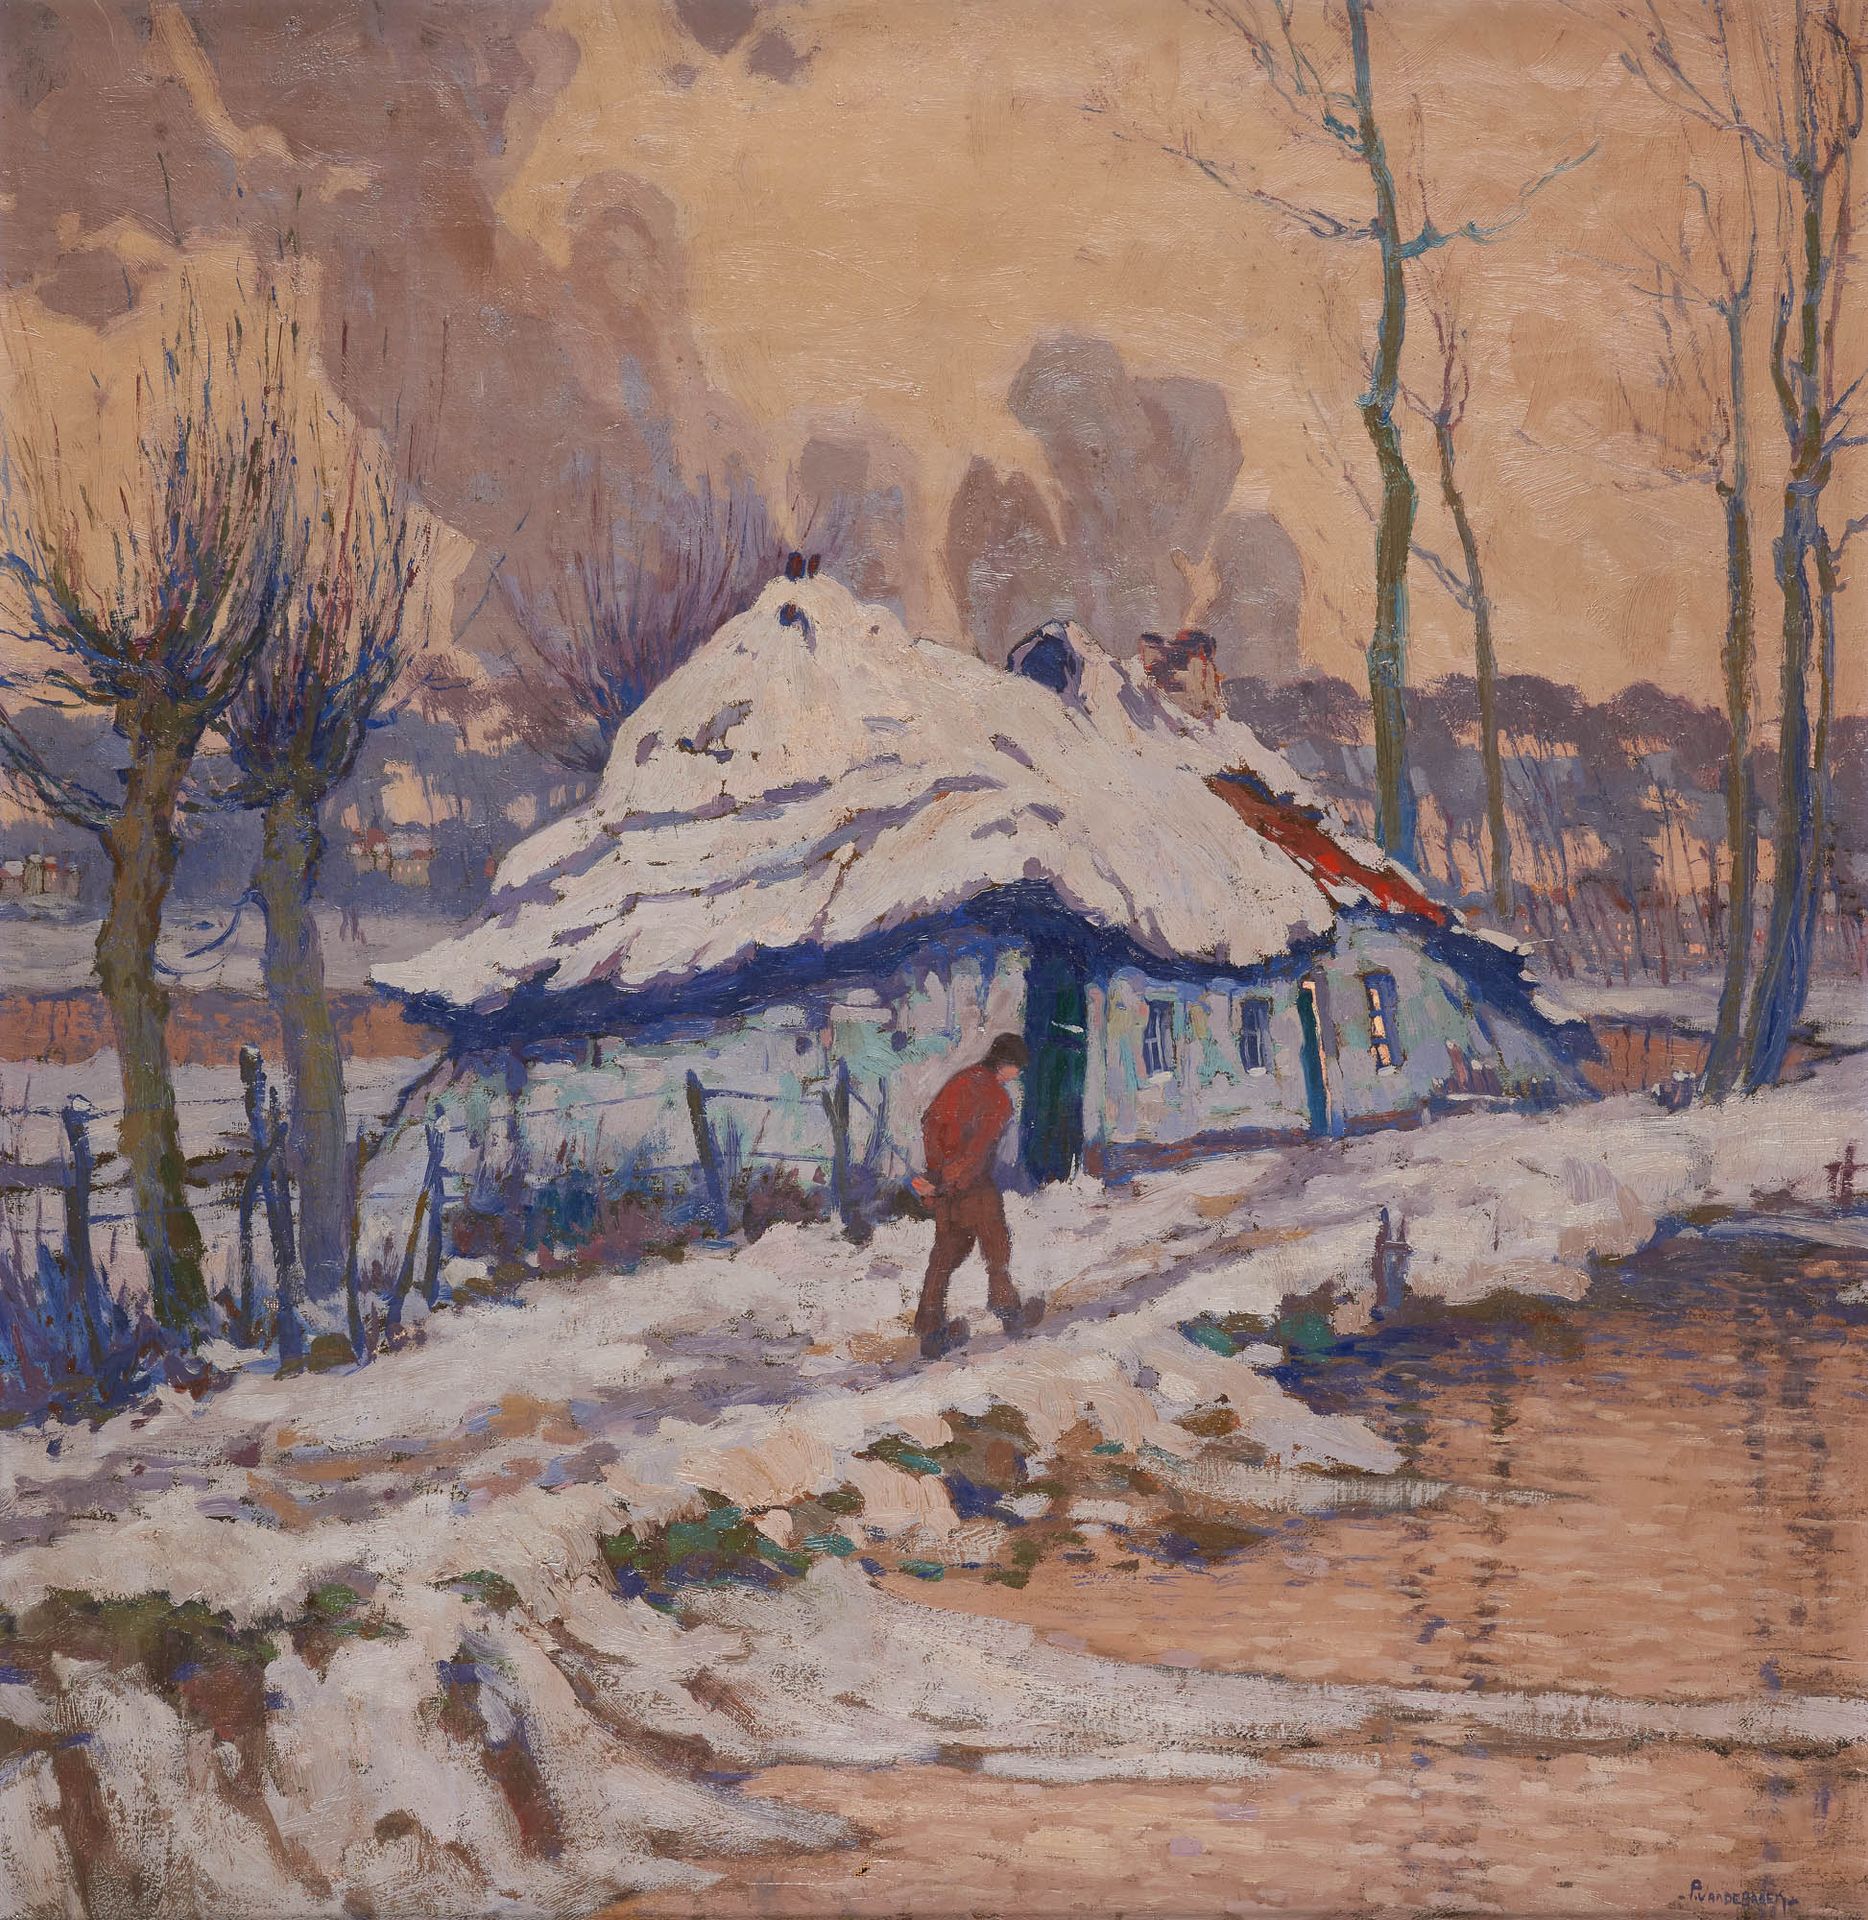 Pol VAN DE BROECK École belge (1887-1927) Öl auf Leinwand: "Schneeeffekt".

Sign&hellip;